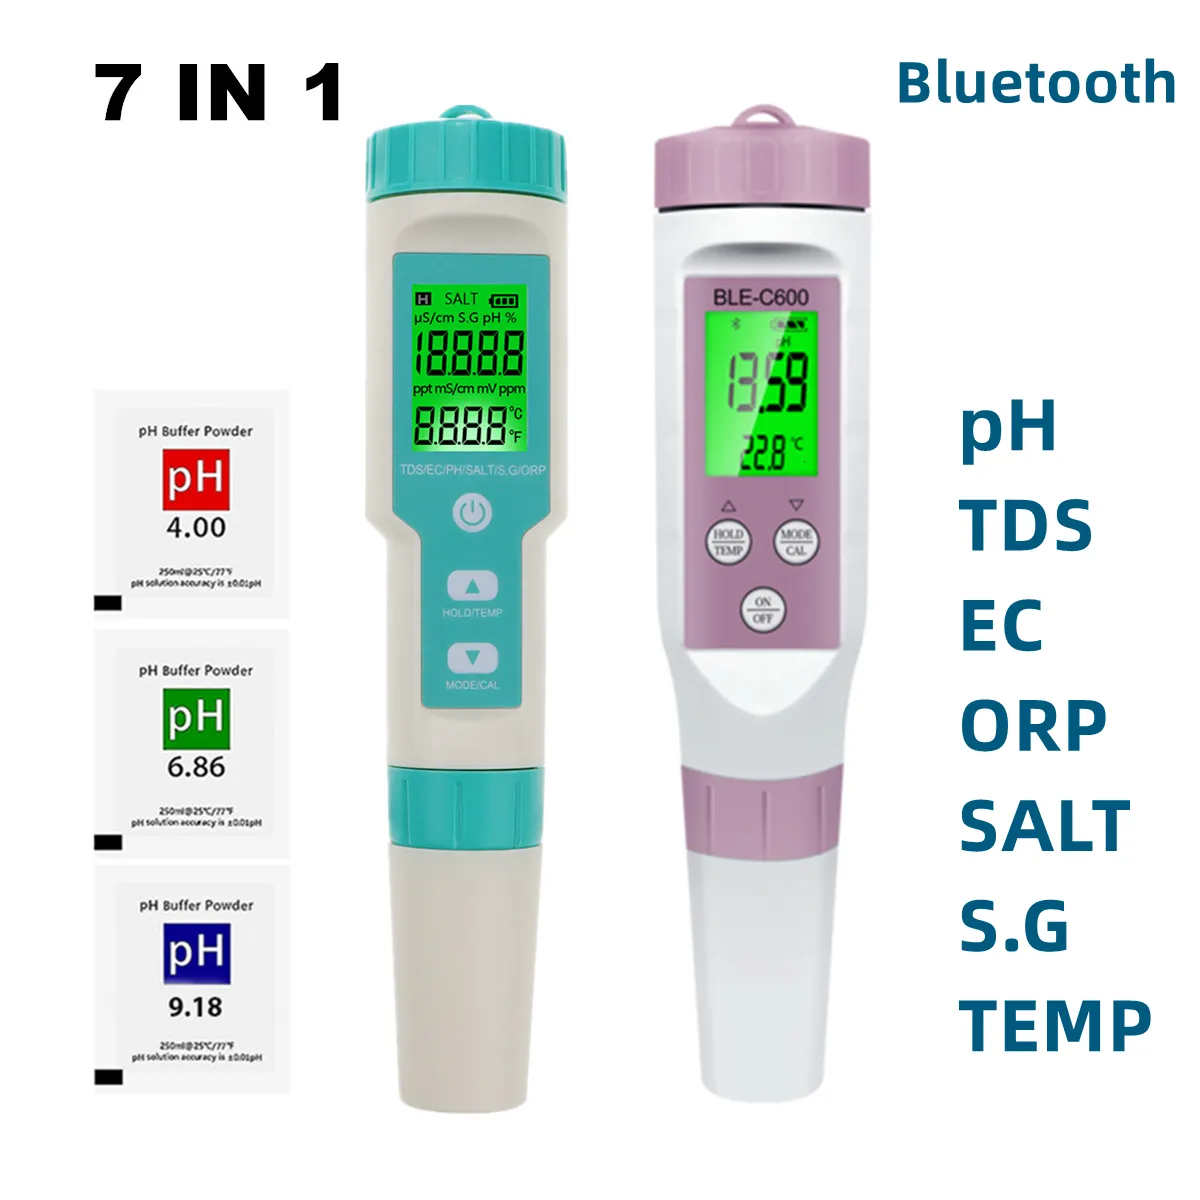 Ph-mètre Testeur multifonctionnel professionnel 5 en 1 testeur  multifonctionnel numérique PH/EC/TDS/salinité/thermomètre testeur de  qualité de l'eau Ph-mètre